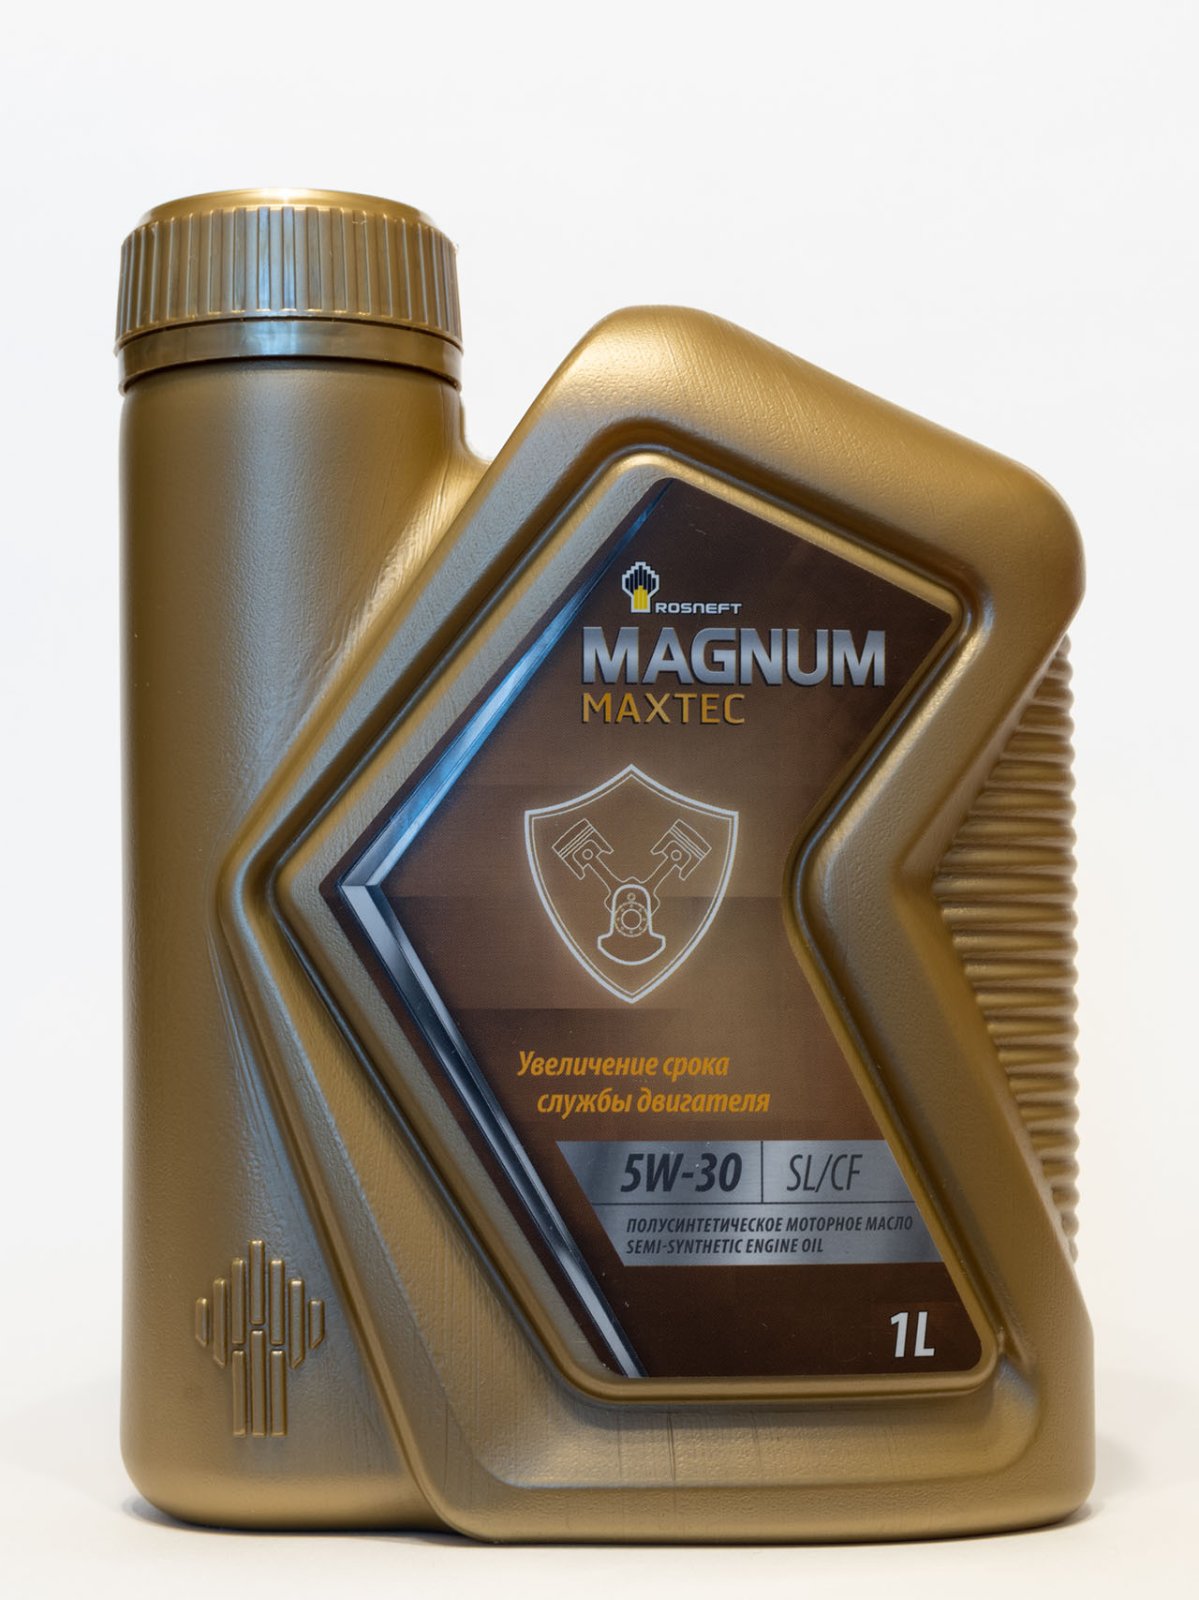  Magnum Maxtec 5W-30 API SL/CF свежее - Лабораторные анализы .